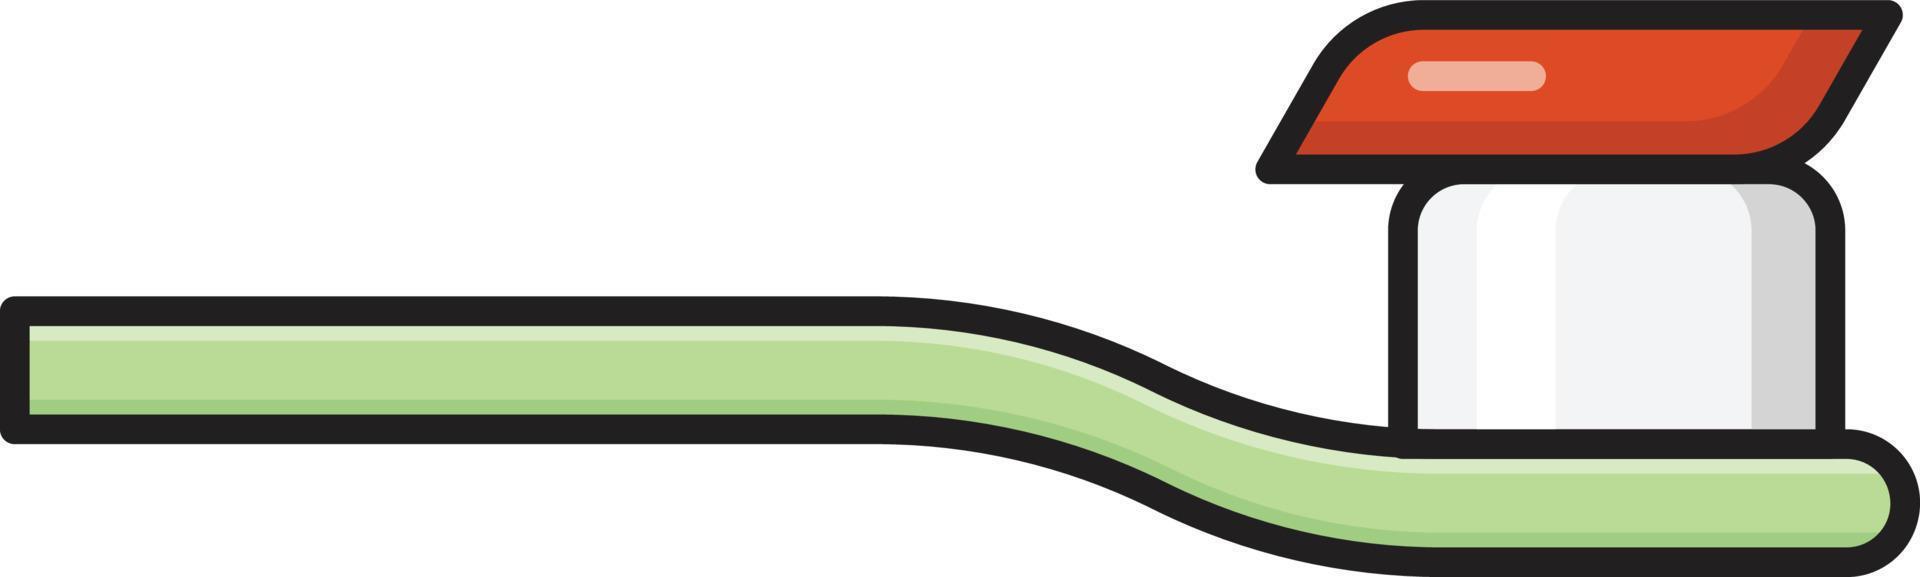 illustrazione vettoriale dello spazzolino da denti su uno sfondo. simboli di qualità premium. icone vettoriali per il concetto e la progettazione grafica.